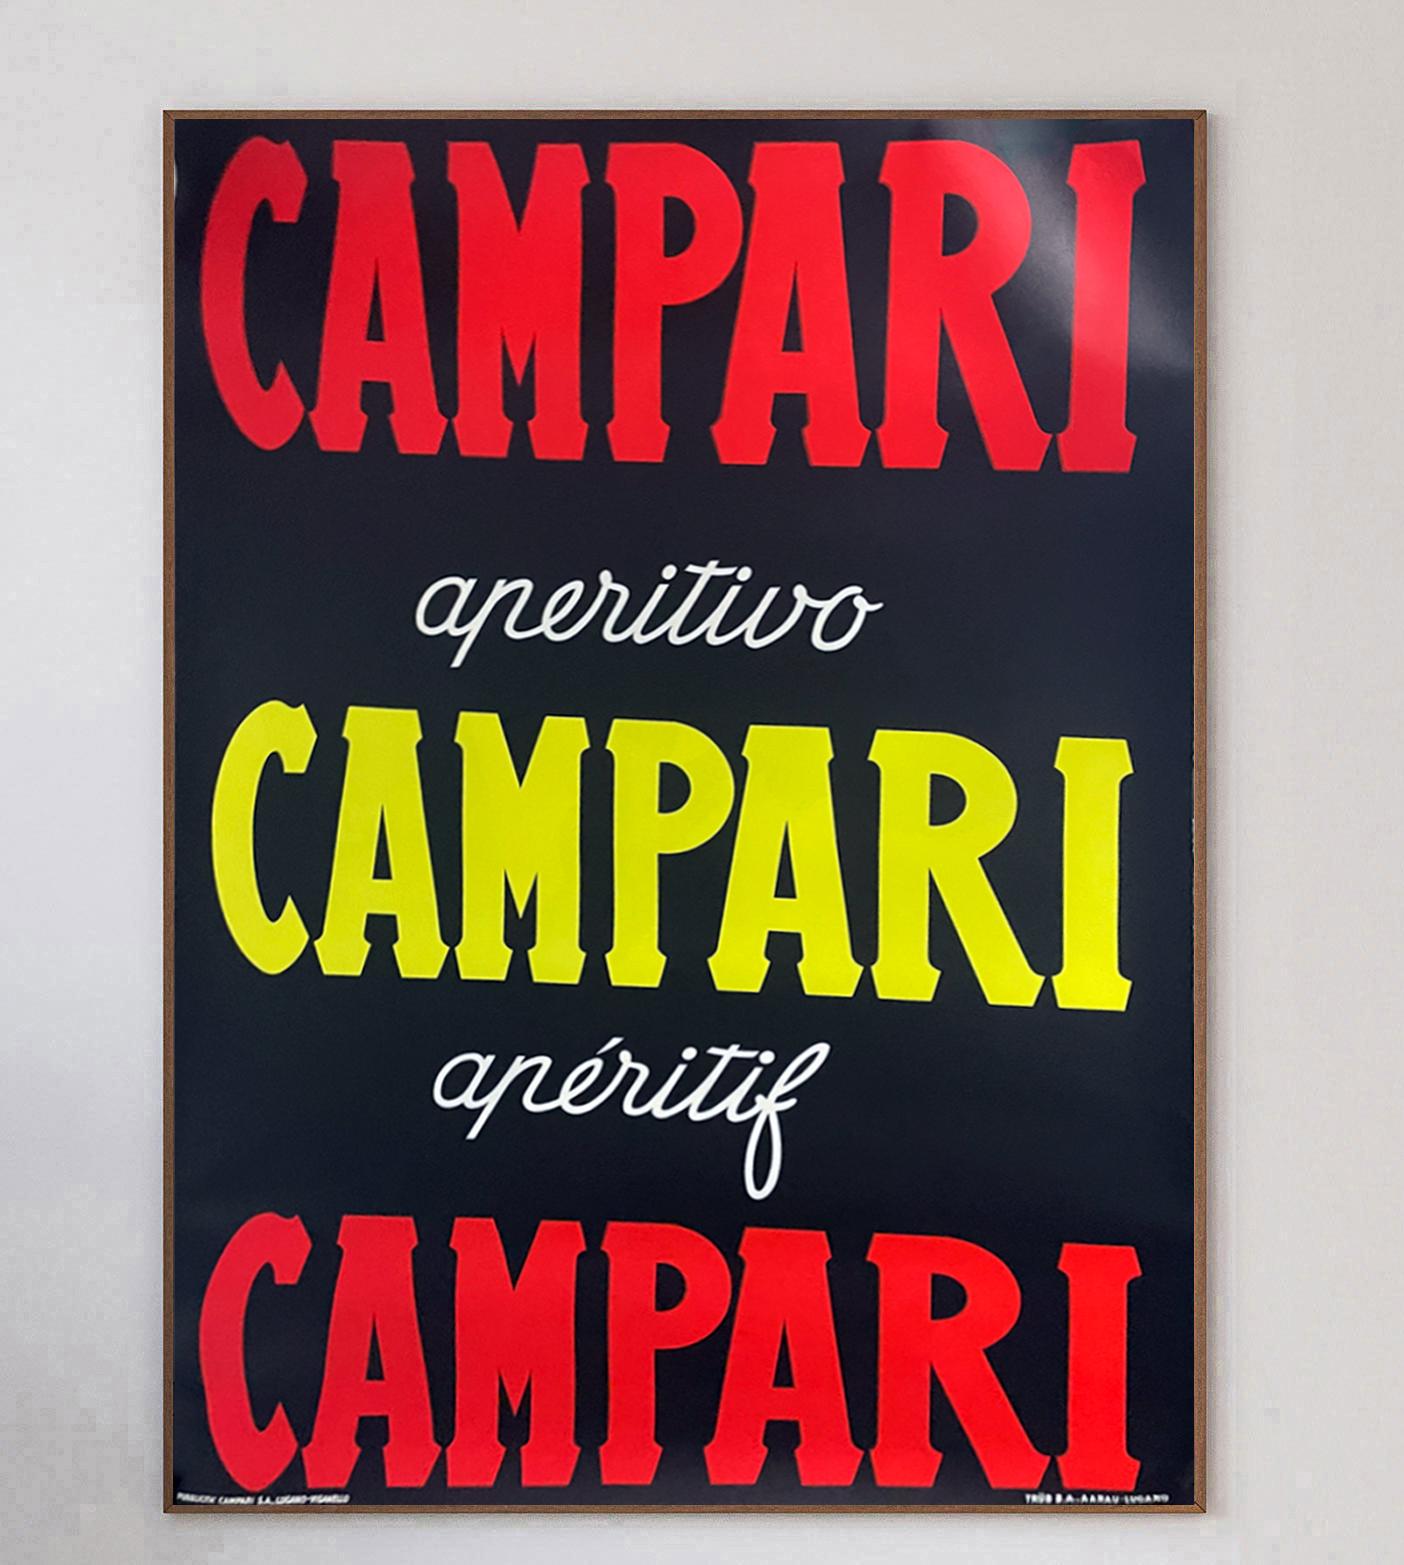 Die ikonische italienische Likörmarke Campari hat im 20. Jahrhundert mit vielen Künstlern zusammengearbeitet und dabei wunderbare und zeitlose Kunstwerke geschaffen. Campari wurde 1860 von Gaspare Campari gegründet, und der Aperitif ist heute so